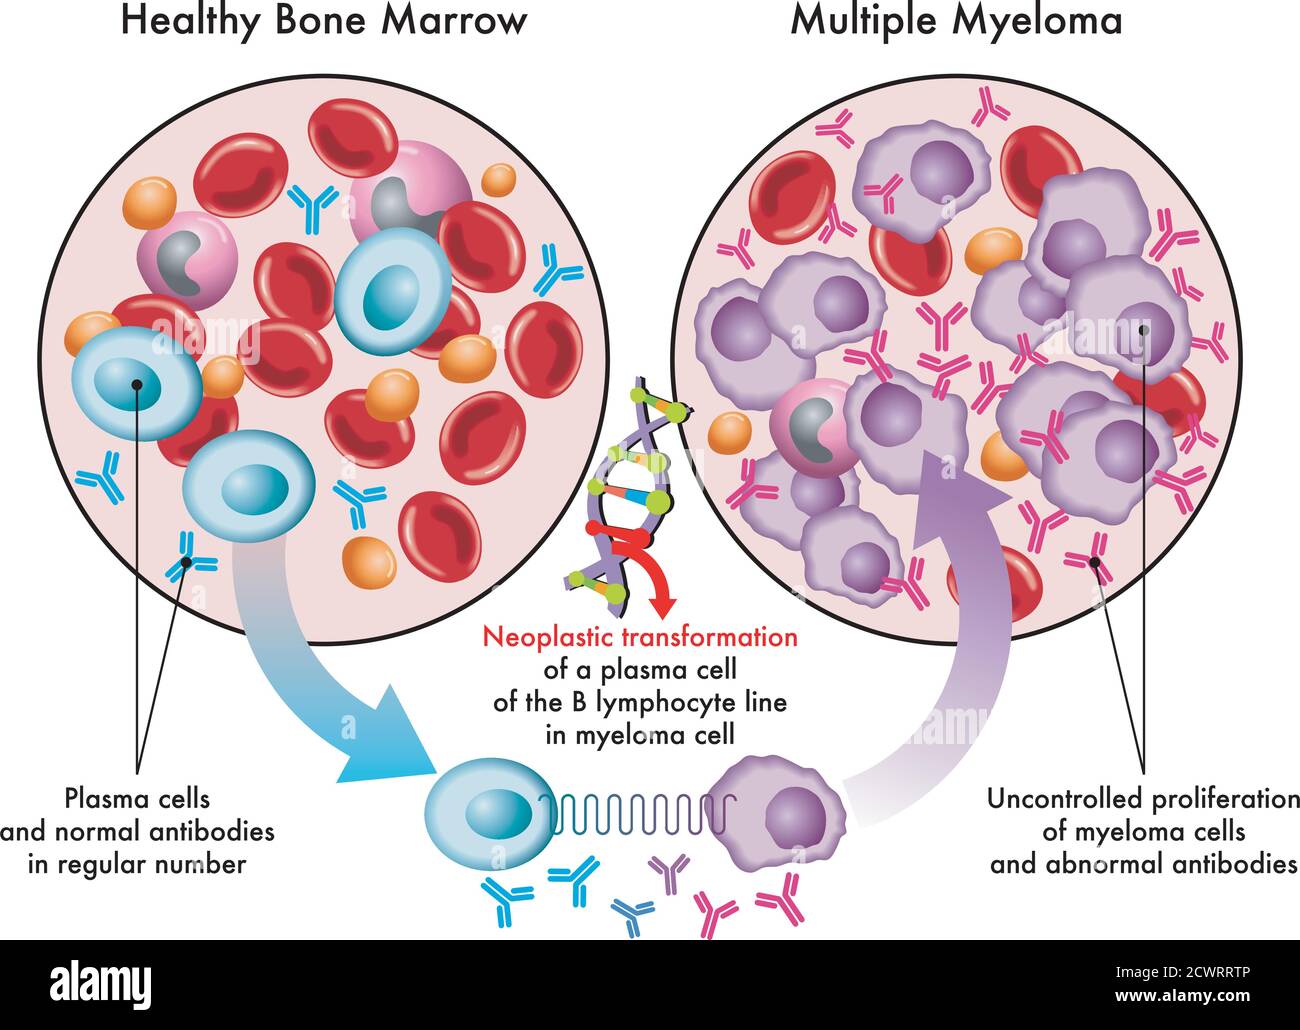 Medizinische Illustration zeigt die Umwandlung von Plasmazellen im gesunden Knochenmark in Myelomzellen im Multiplen Myelom, bedingt durch DNA-Schäden. Stock Vektor